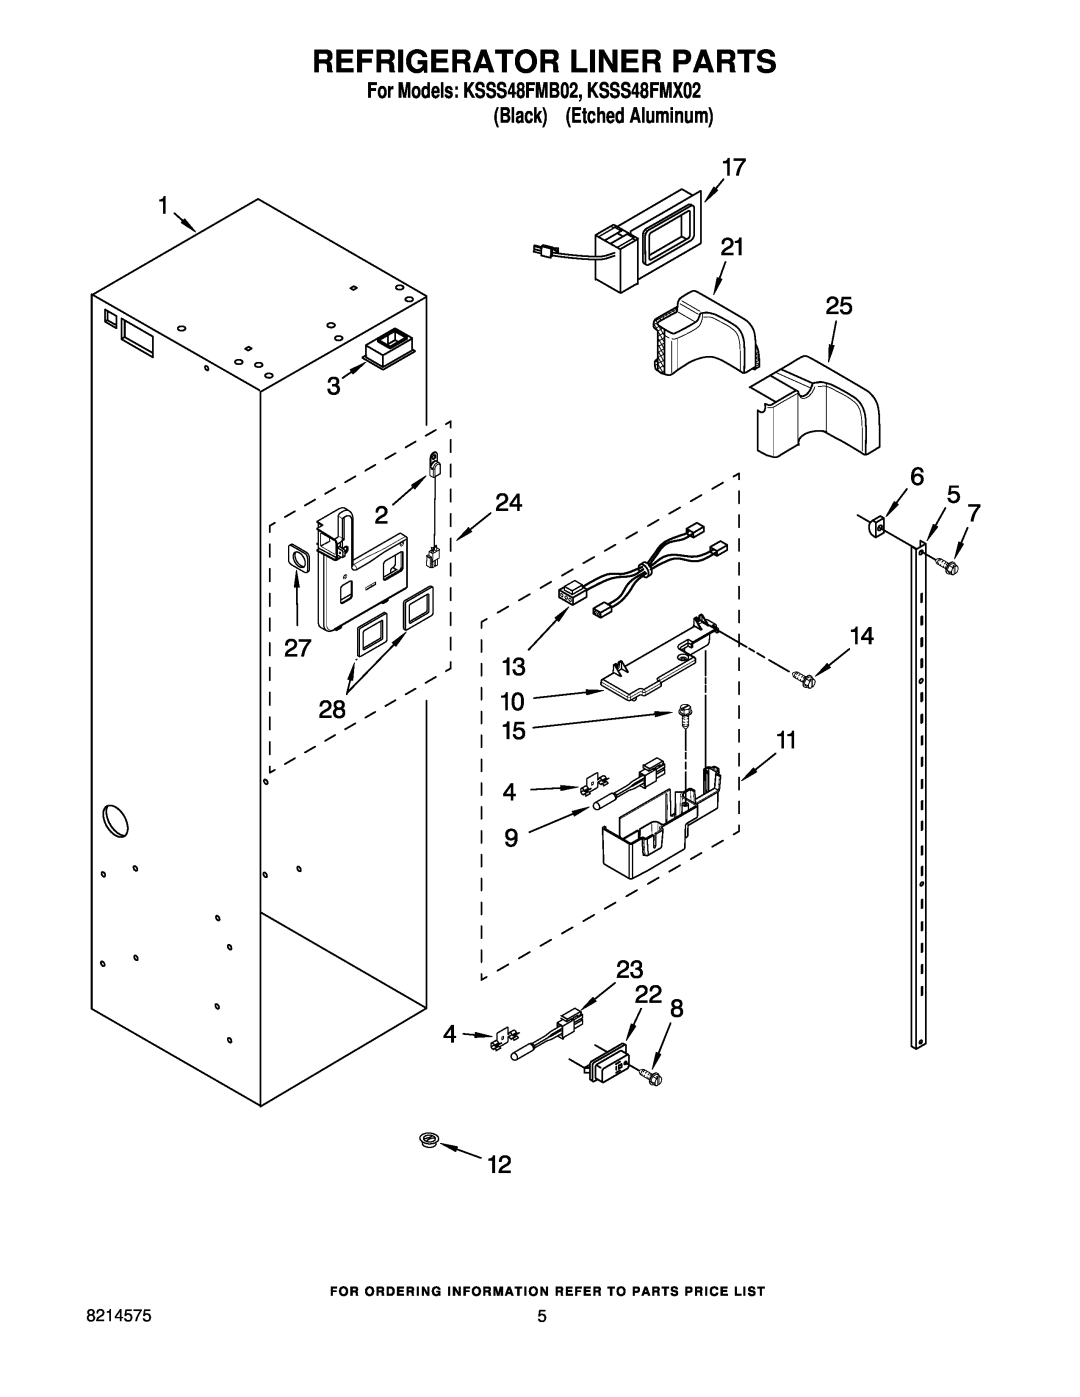 KitchenAid manual Refrigerator Liner Parts, For Models KSSS48FMB02, KSSS48FMX02 Black Etched Aluminum 